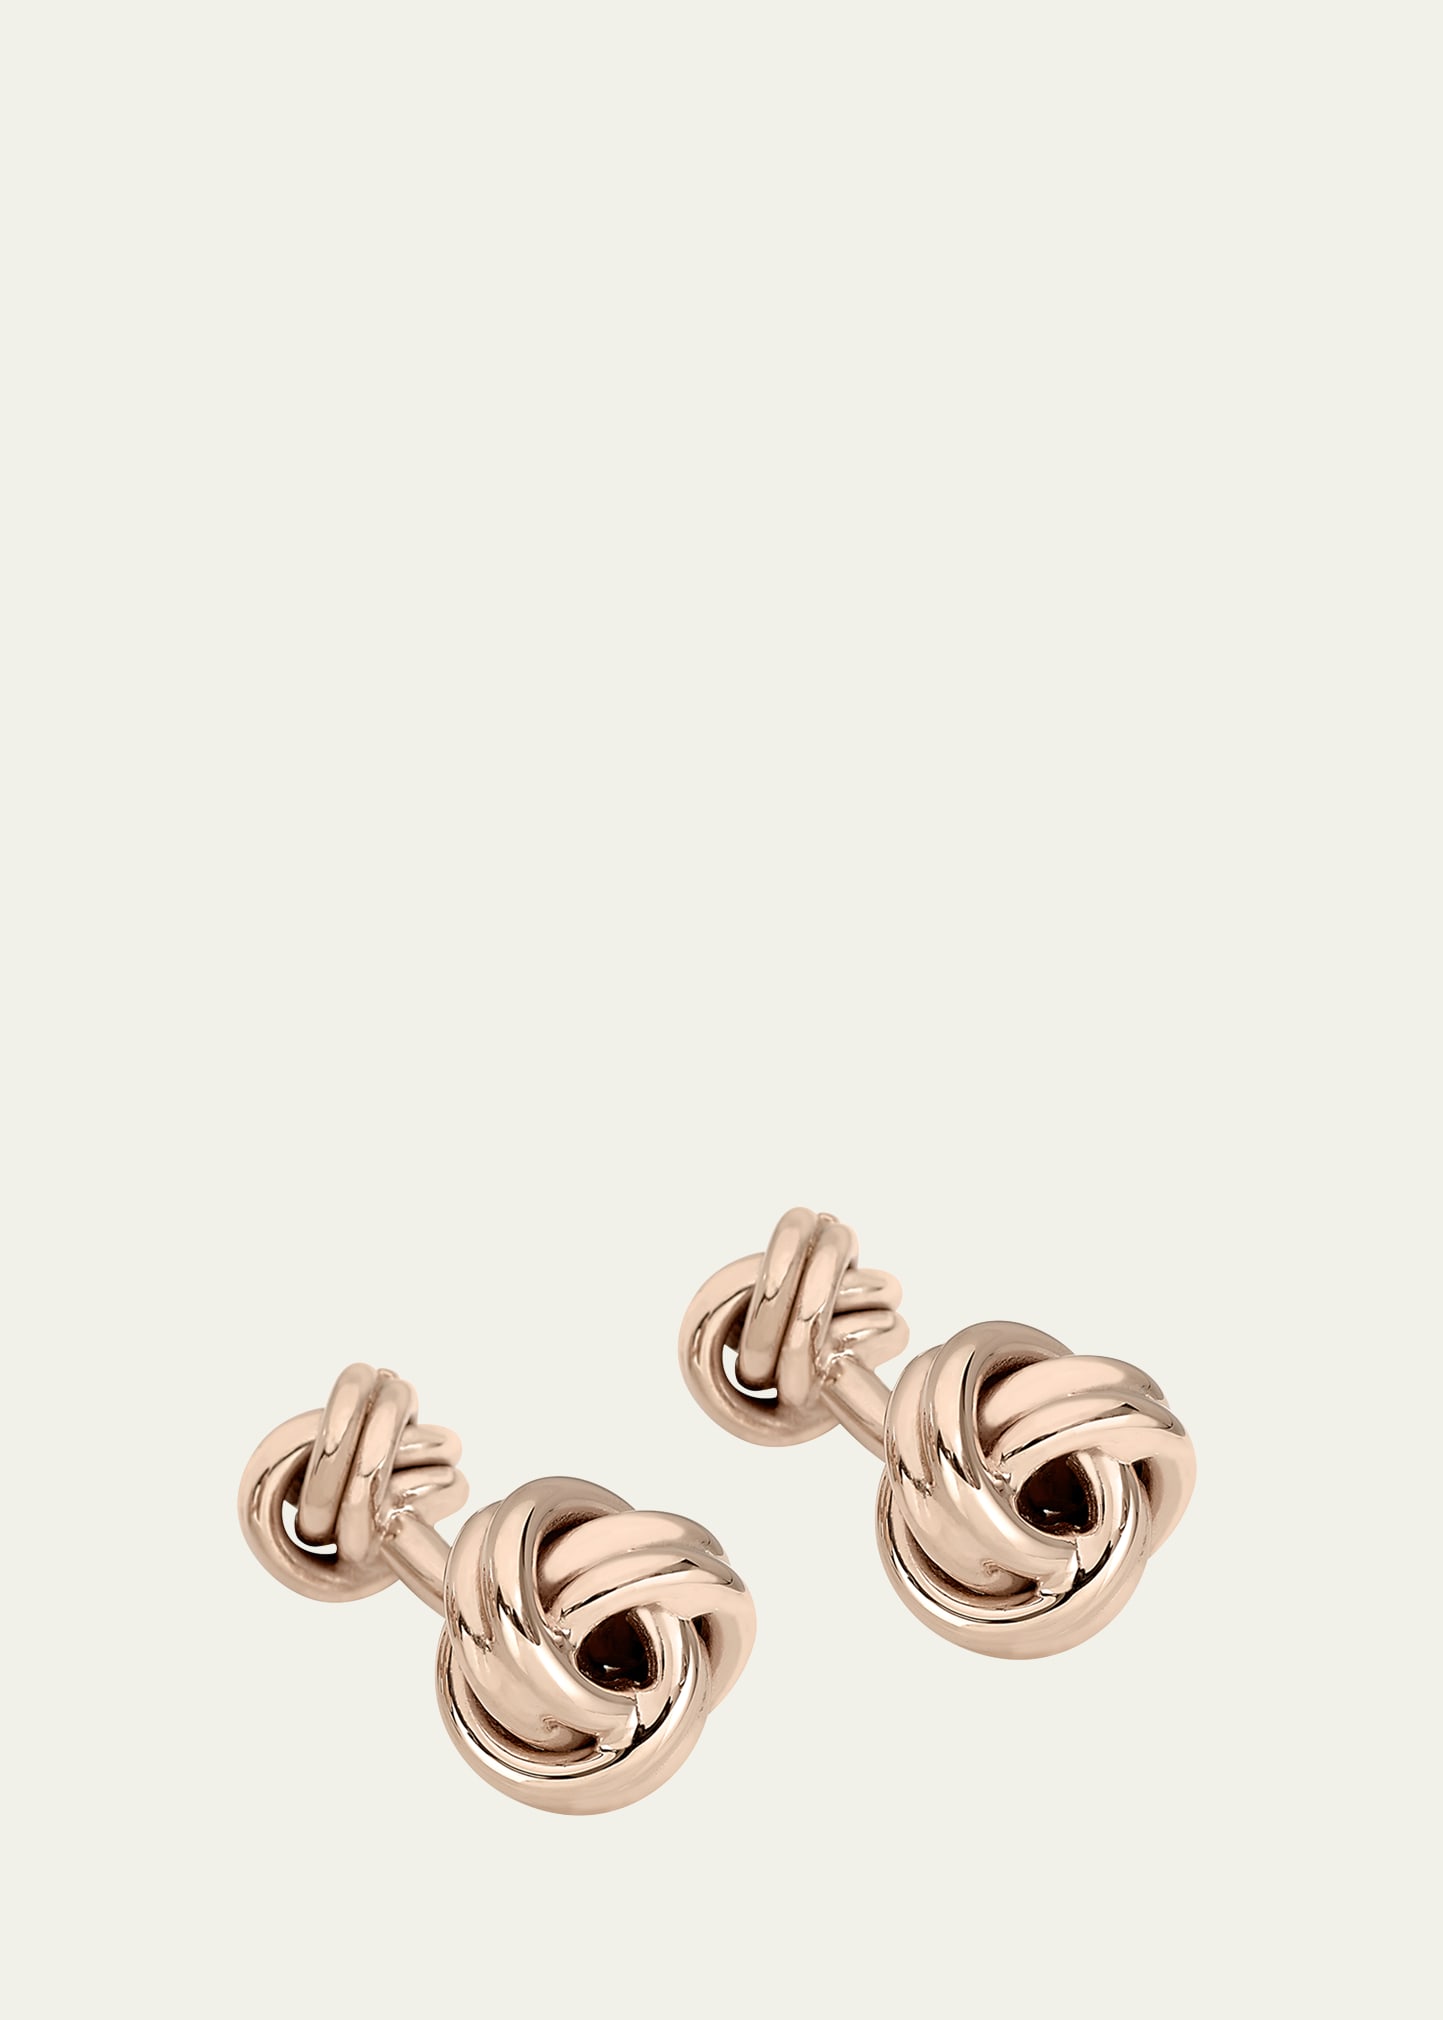 Lindsay & Co Men's 14k Rose Gold Knot Cufflinks